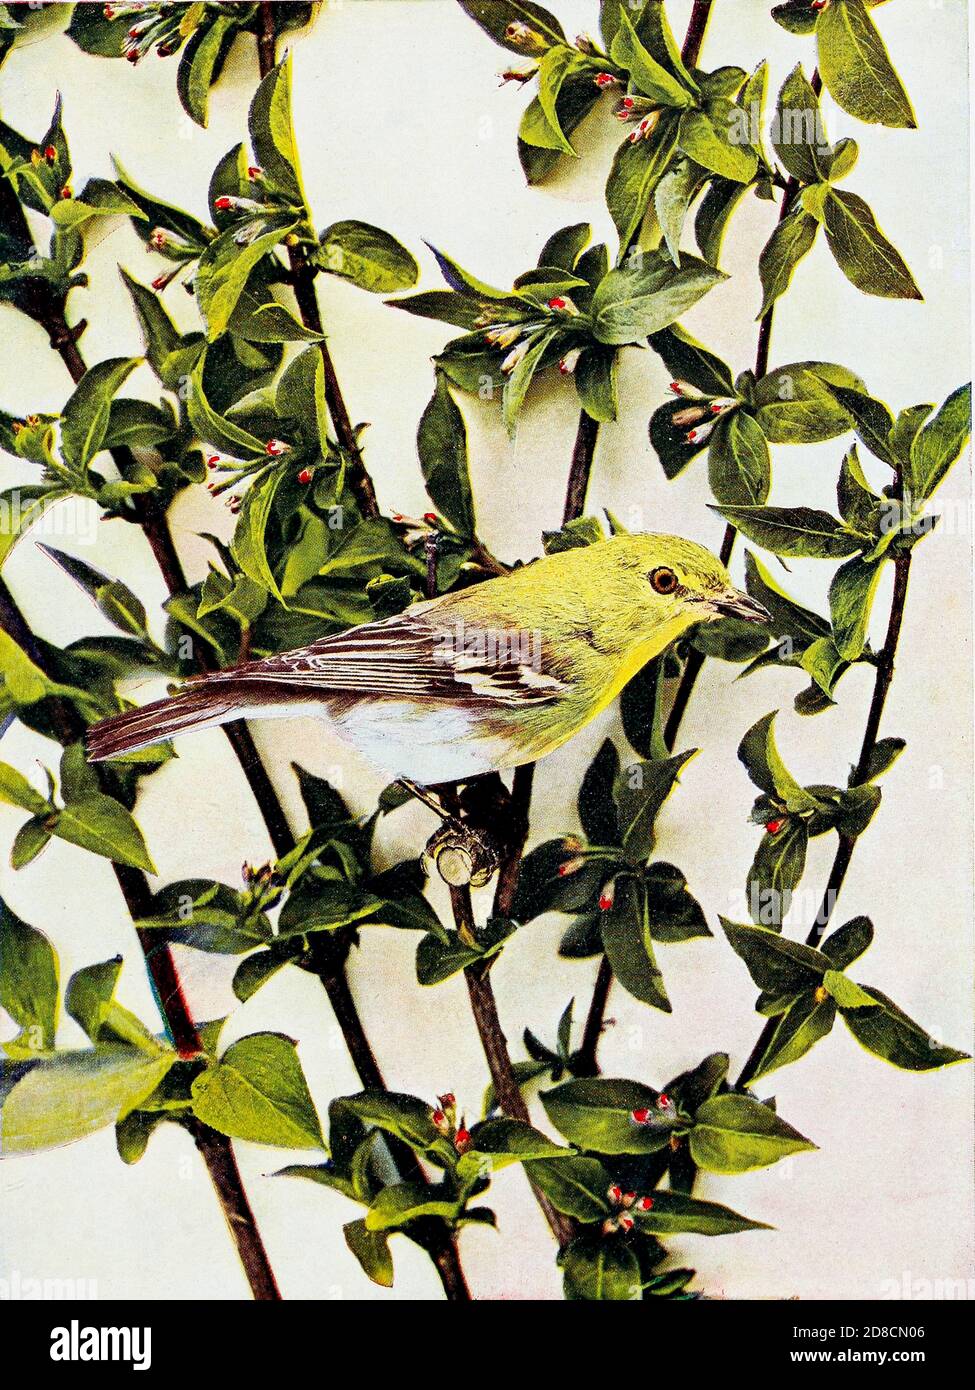 Der Gelbkehlige Vireo (Vireo flavifrons) ist ein kleiner amerikanischer singvogel. From Birds : illustriert durch Farbfotografie : eine monatliche Serie. Kenntnisse über Bird-Life Vol. 1 Nr. 1 Juni 1897 Stockfoto